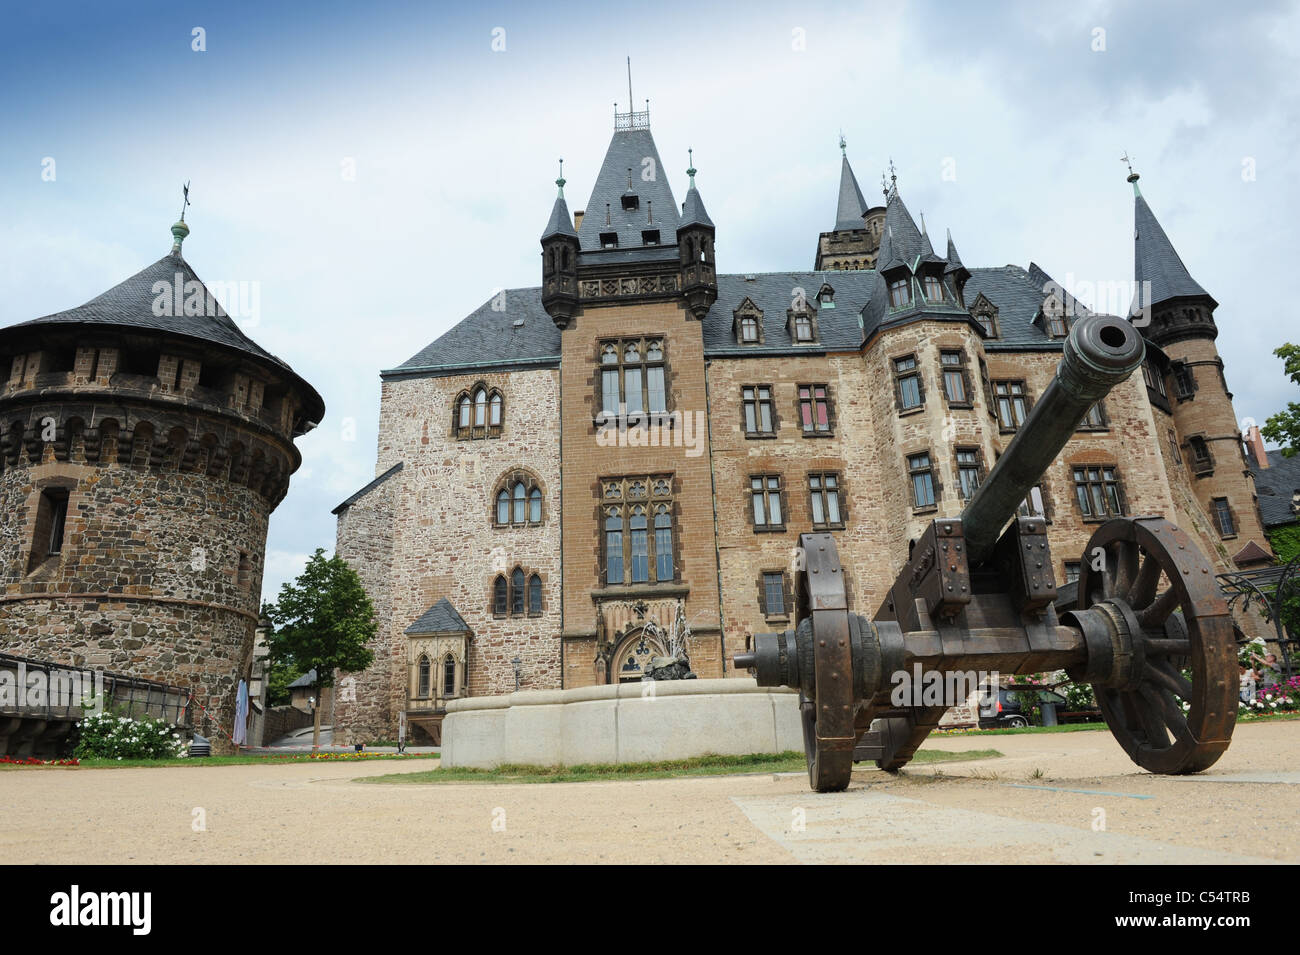 Château de Wernigerode Harz dans le district de Saxe-anhalt Allemagne Allemagne Deutschland Banque D'Images